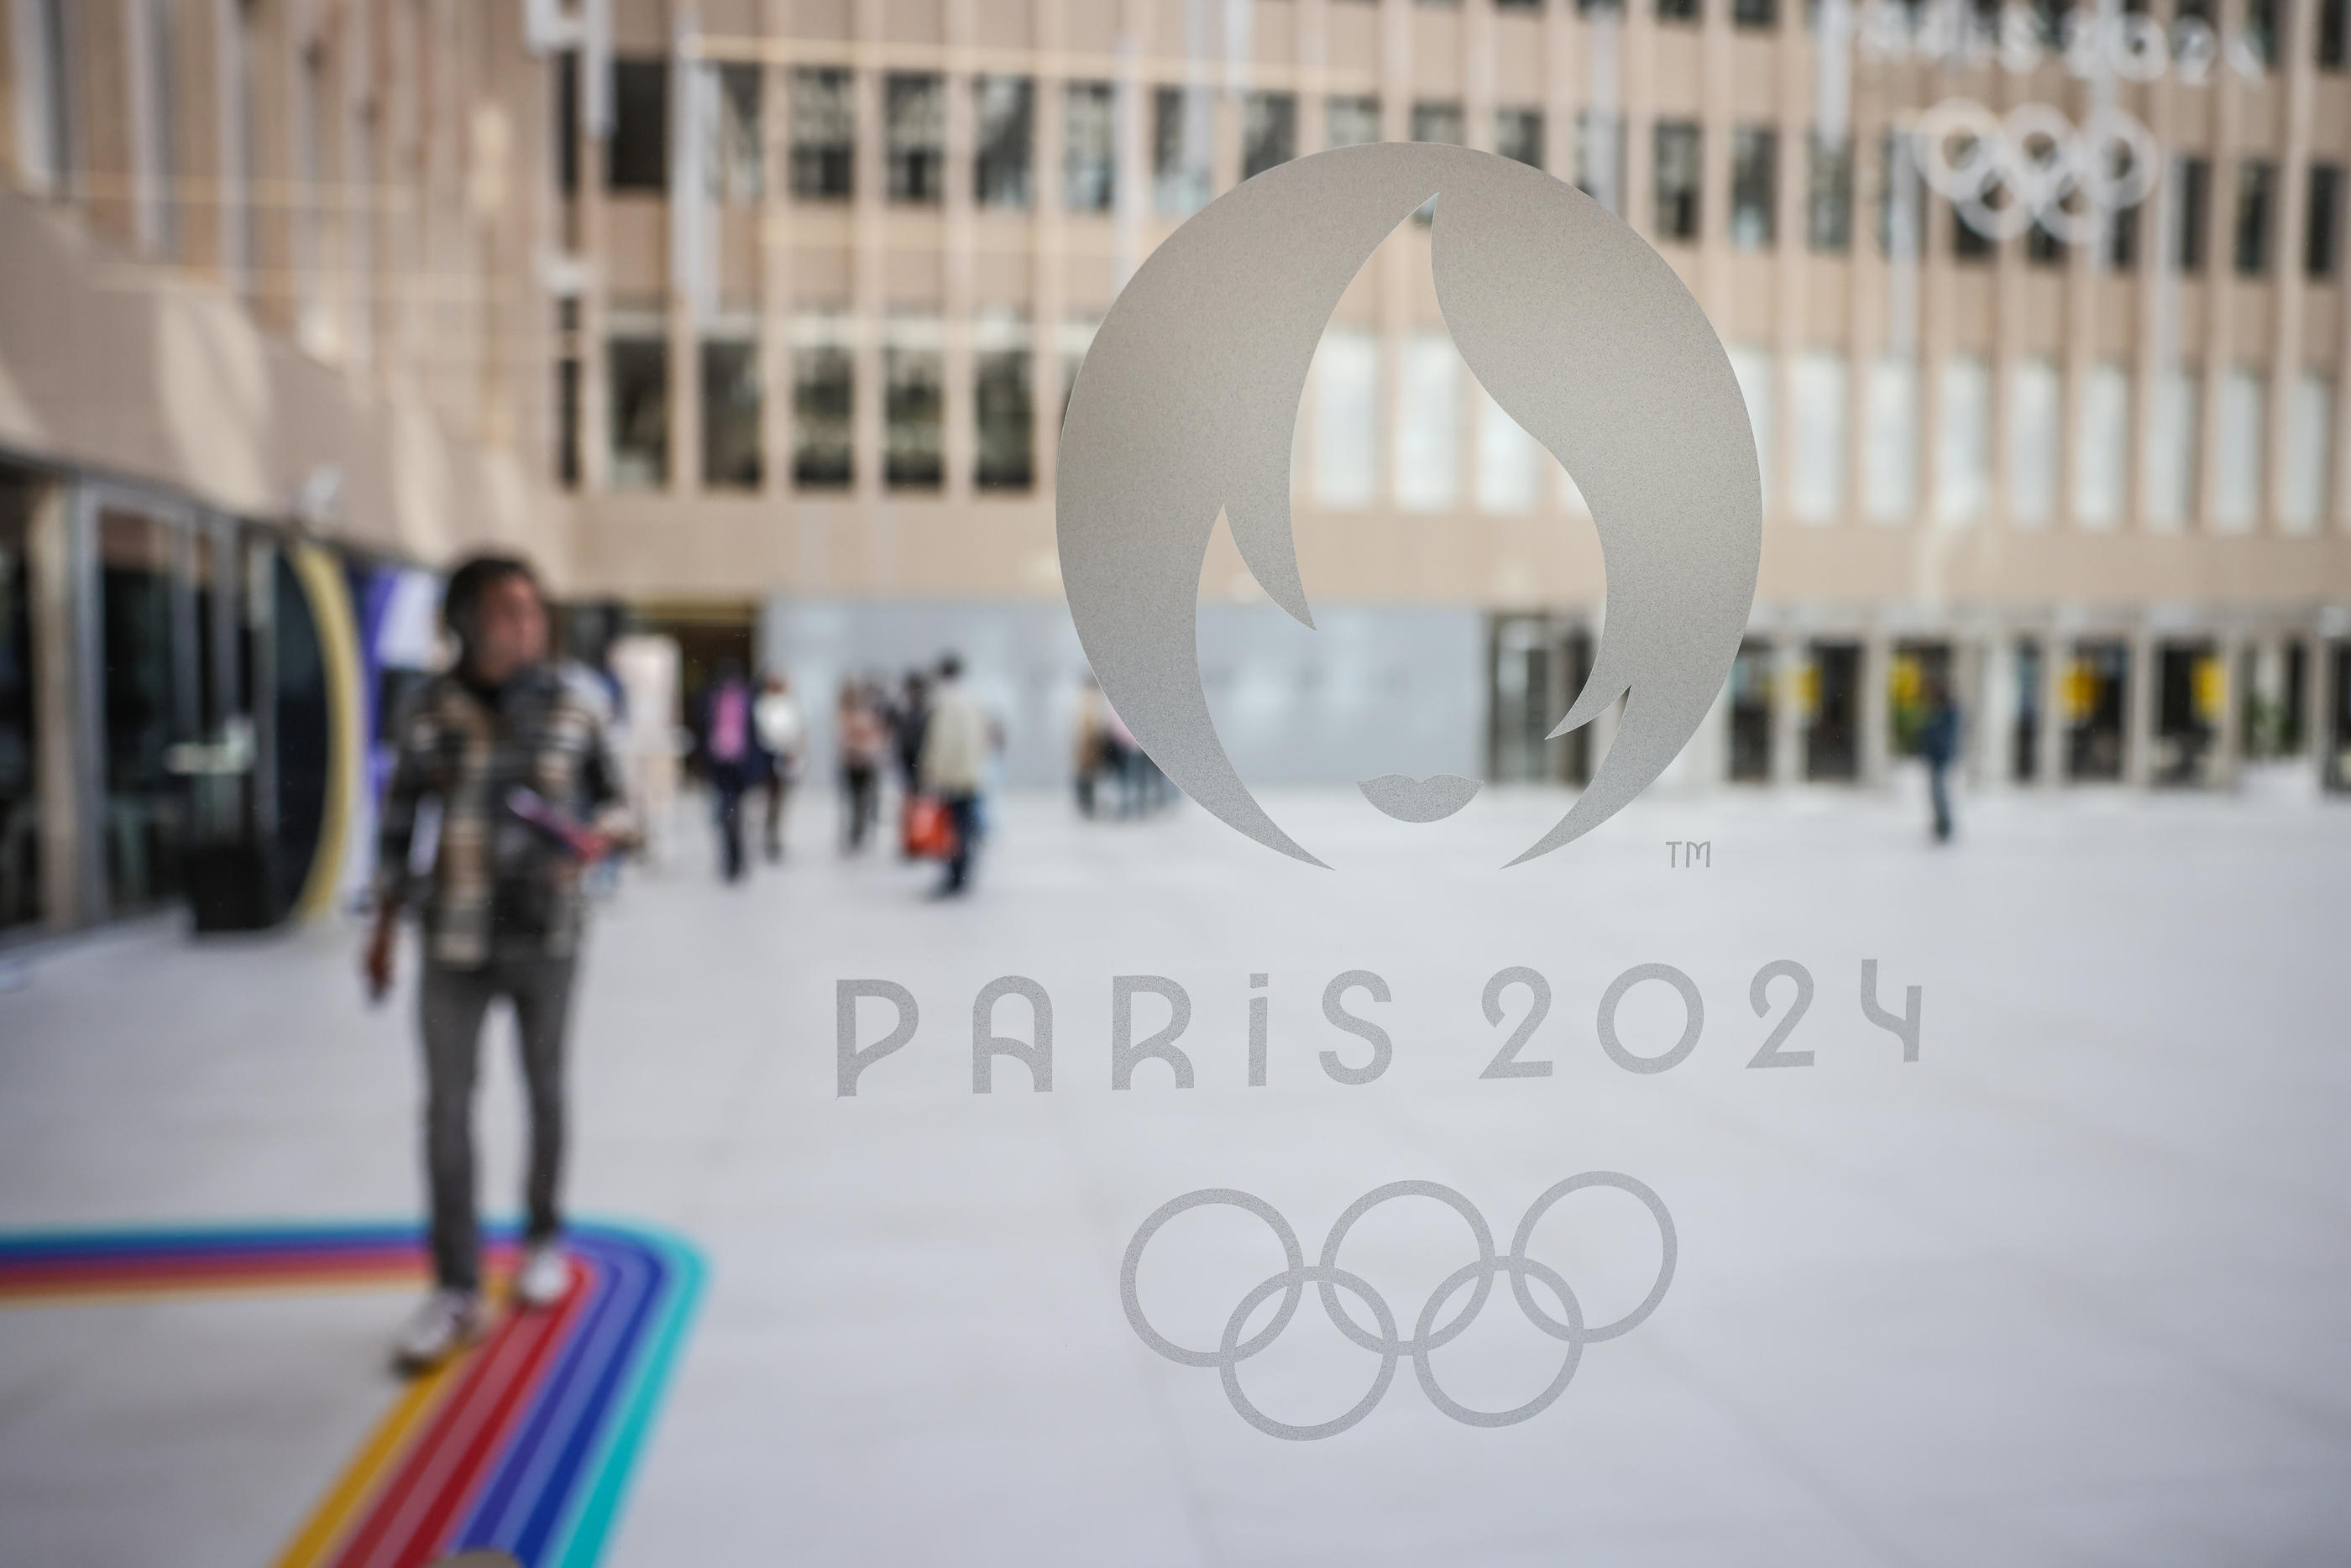 Poster de voyage sur toile Jeux Olympiques de Paris 2024